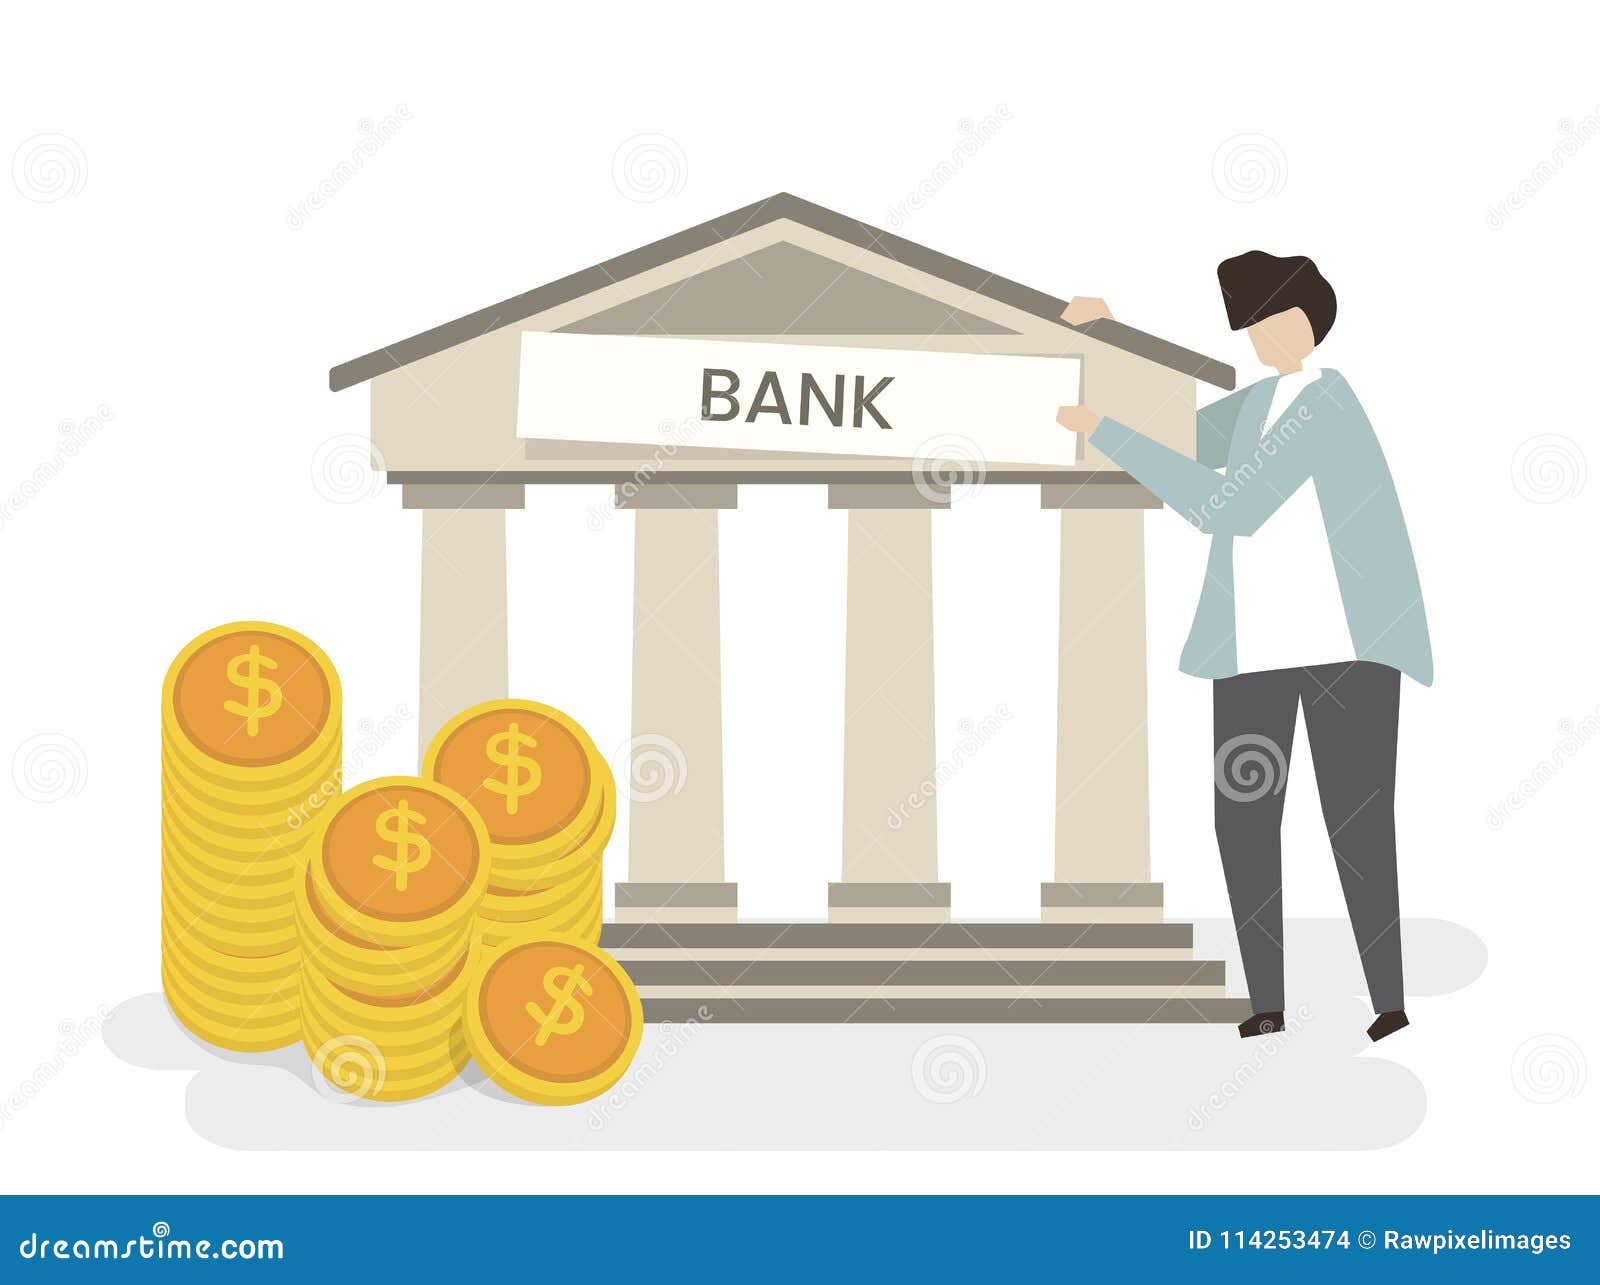 Of money bank having. Банковские иллюстрации. Банк рисунок. Векторные иллюстрации банк. Рисунок на тему банк.